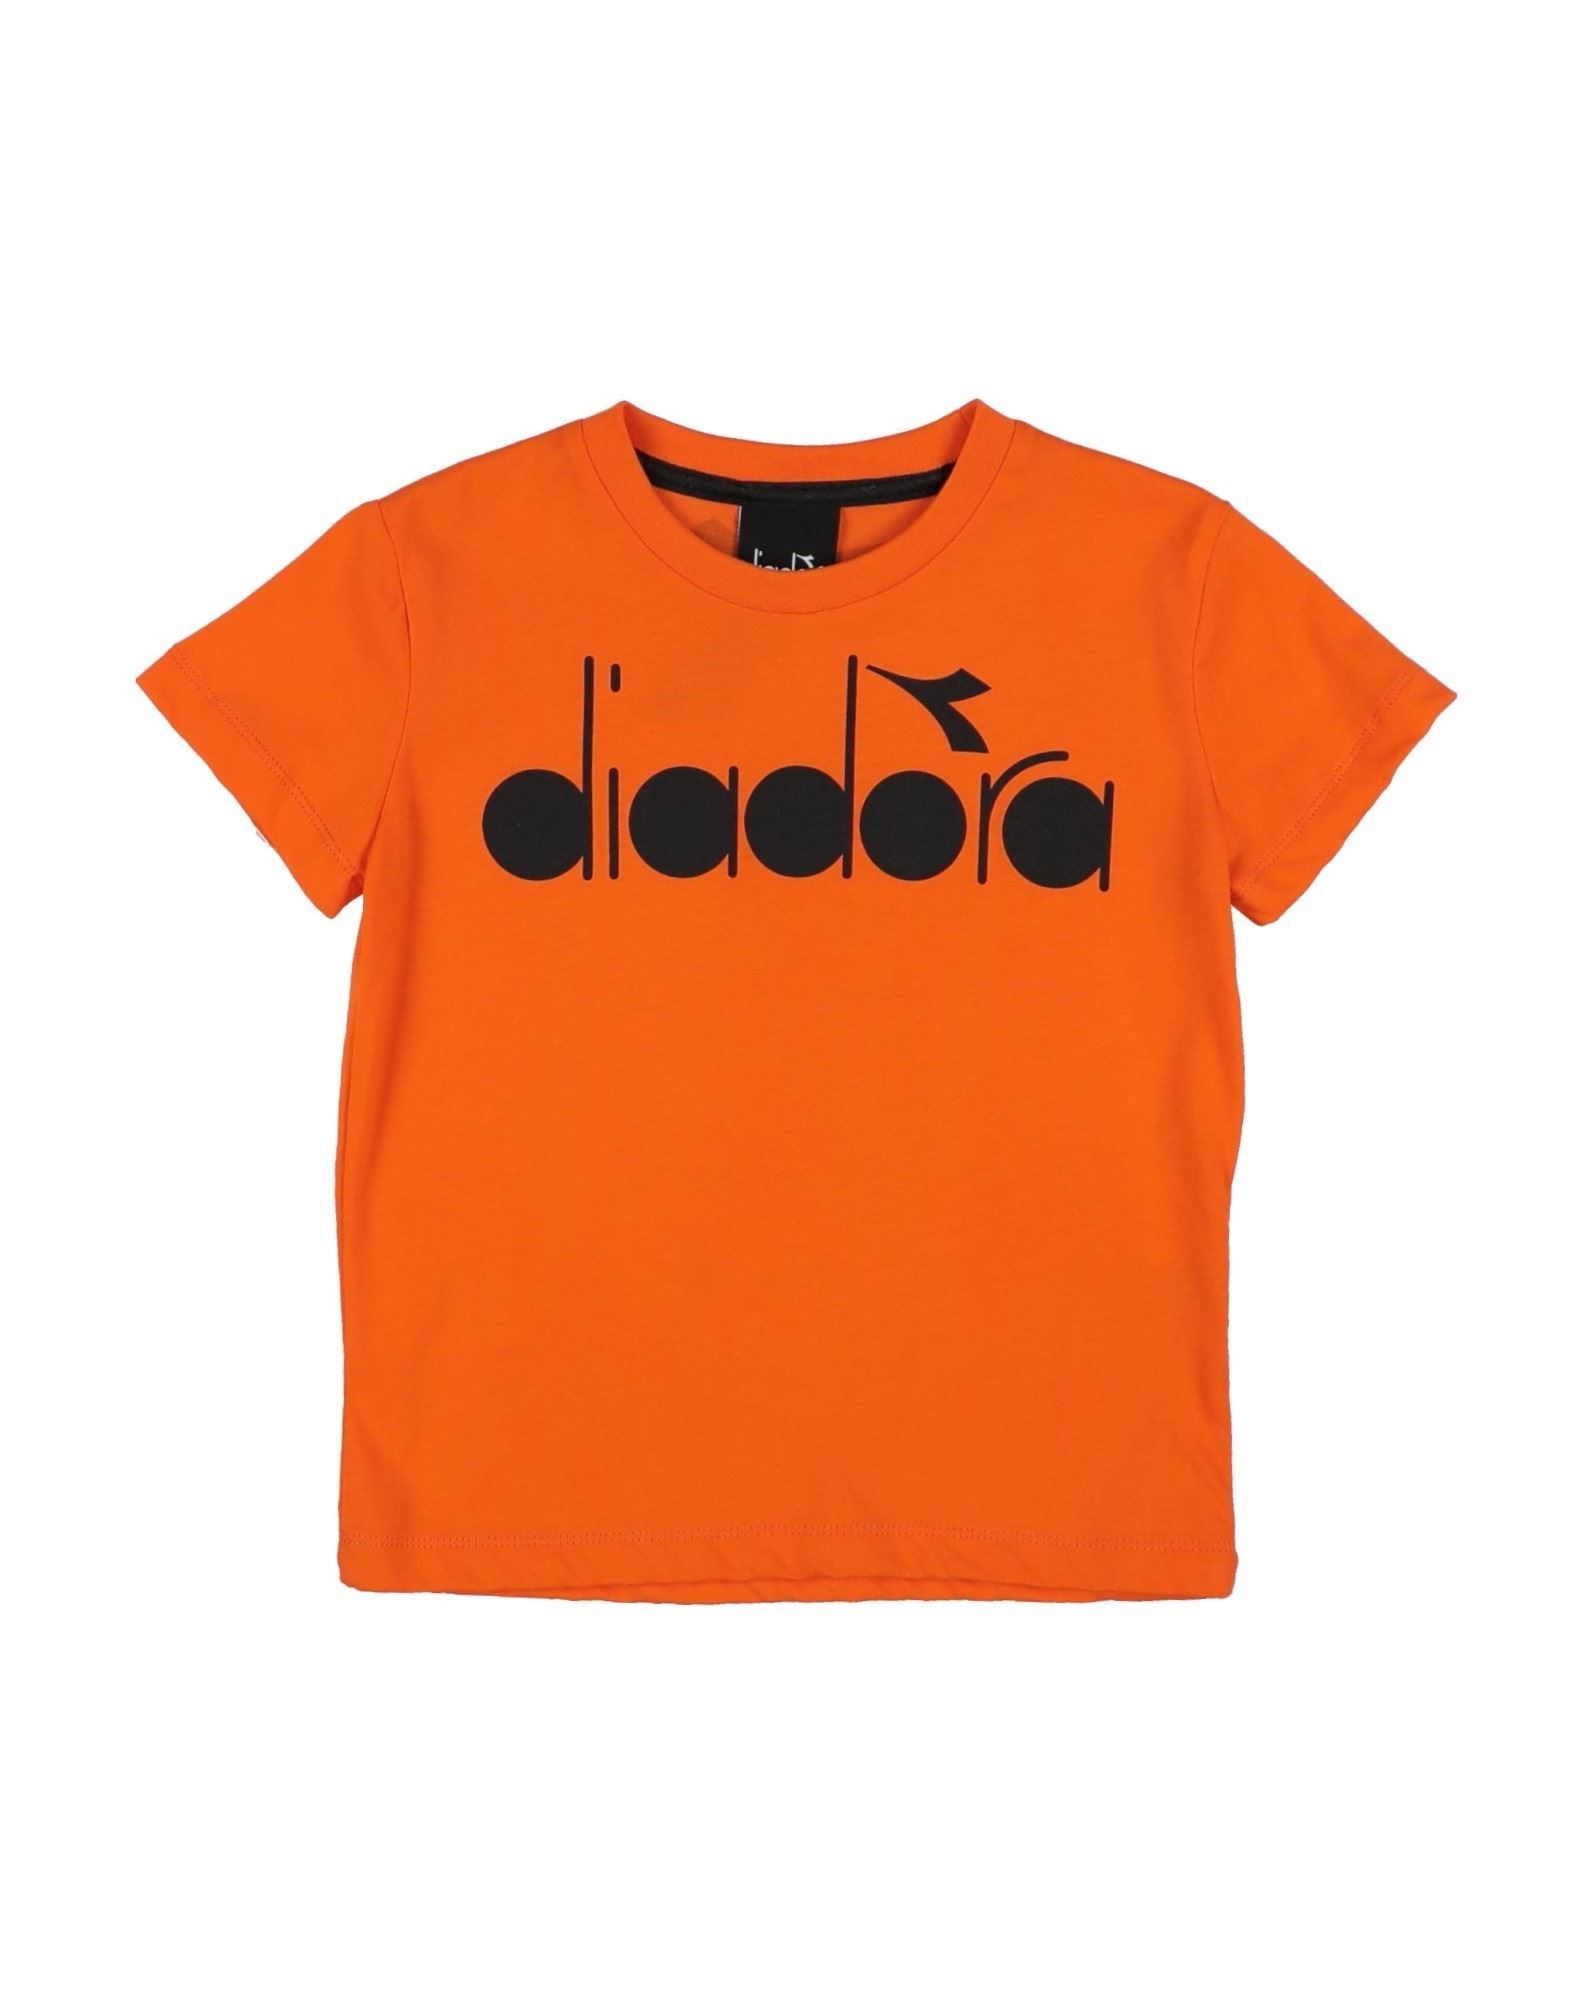 Diadora Kids' T-shirts In Orange